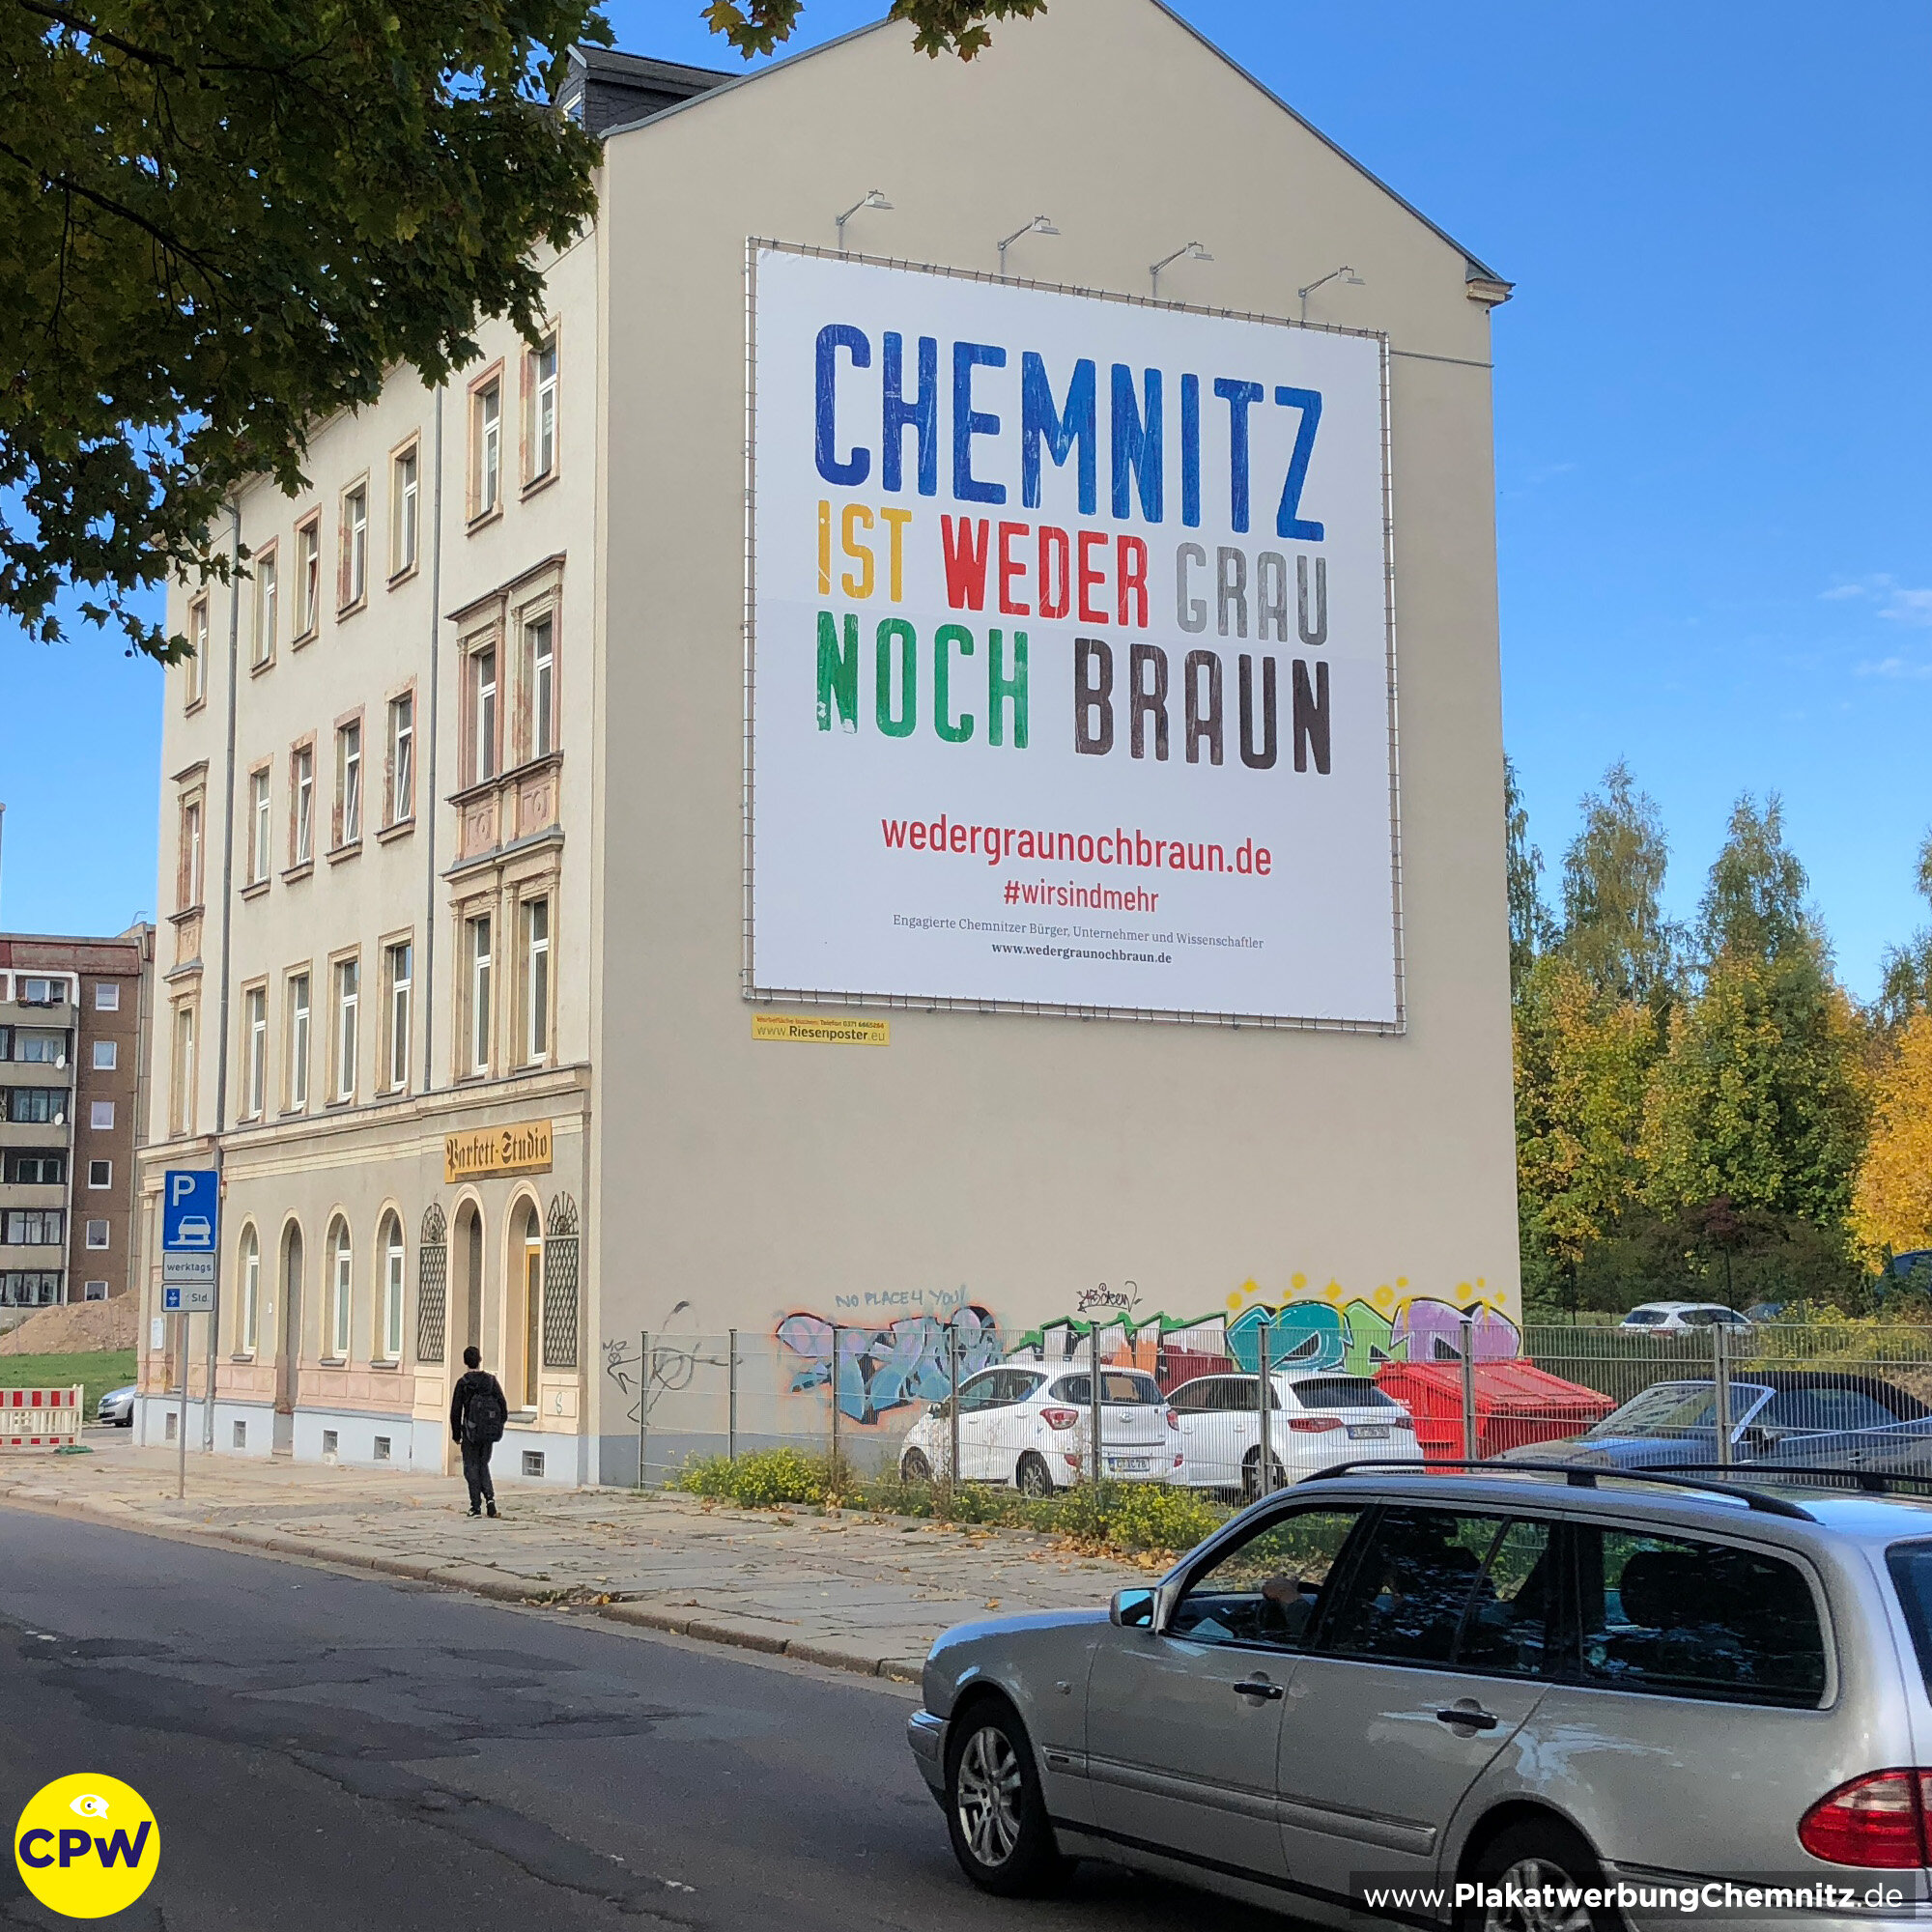 CPW Plakatwerbung Chemnitz - Werbefläche AUGUSTE 81m² - Chemnitz ist weder grau noch braun